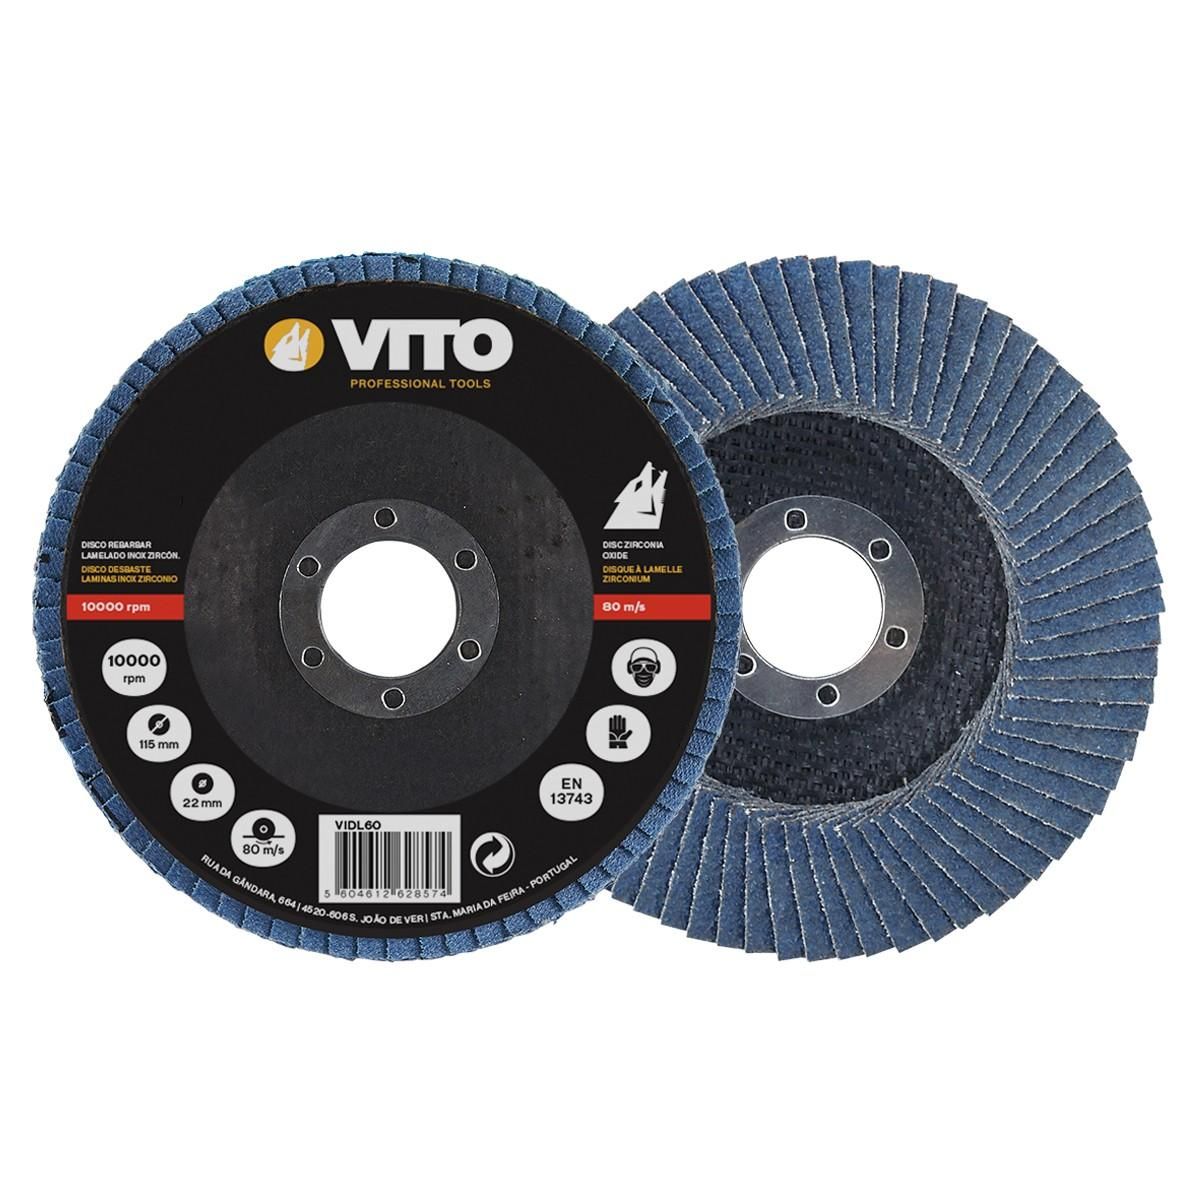 VITO Pro-Power Disque à lamelle Diamètre 115 mm Alésage 22 mm- G100 zirconium VITOPOWER